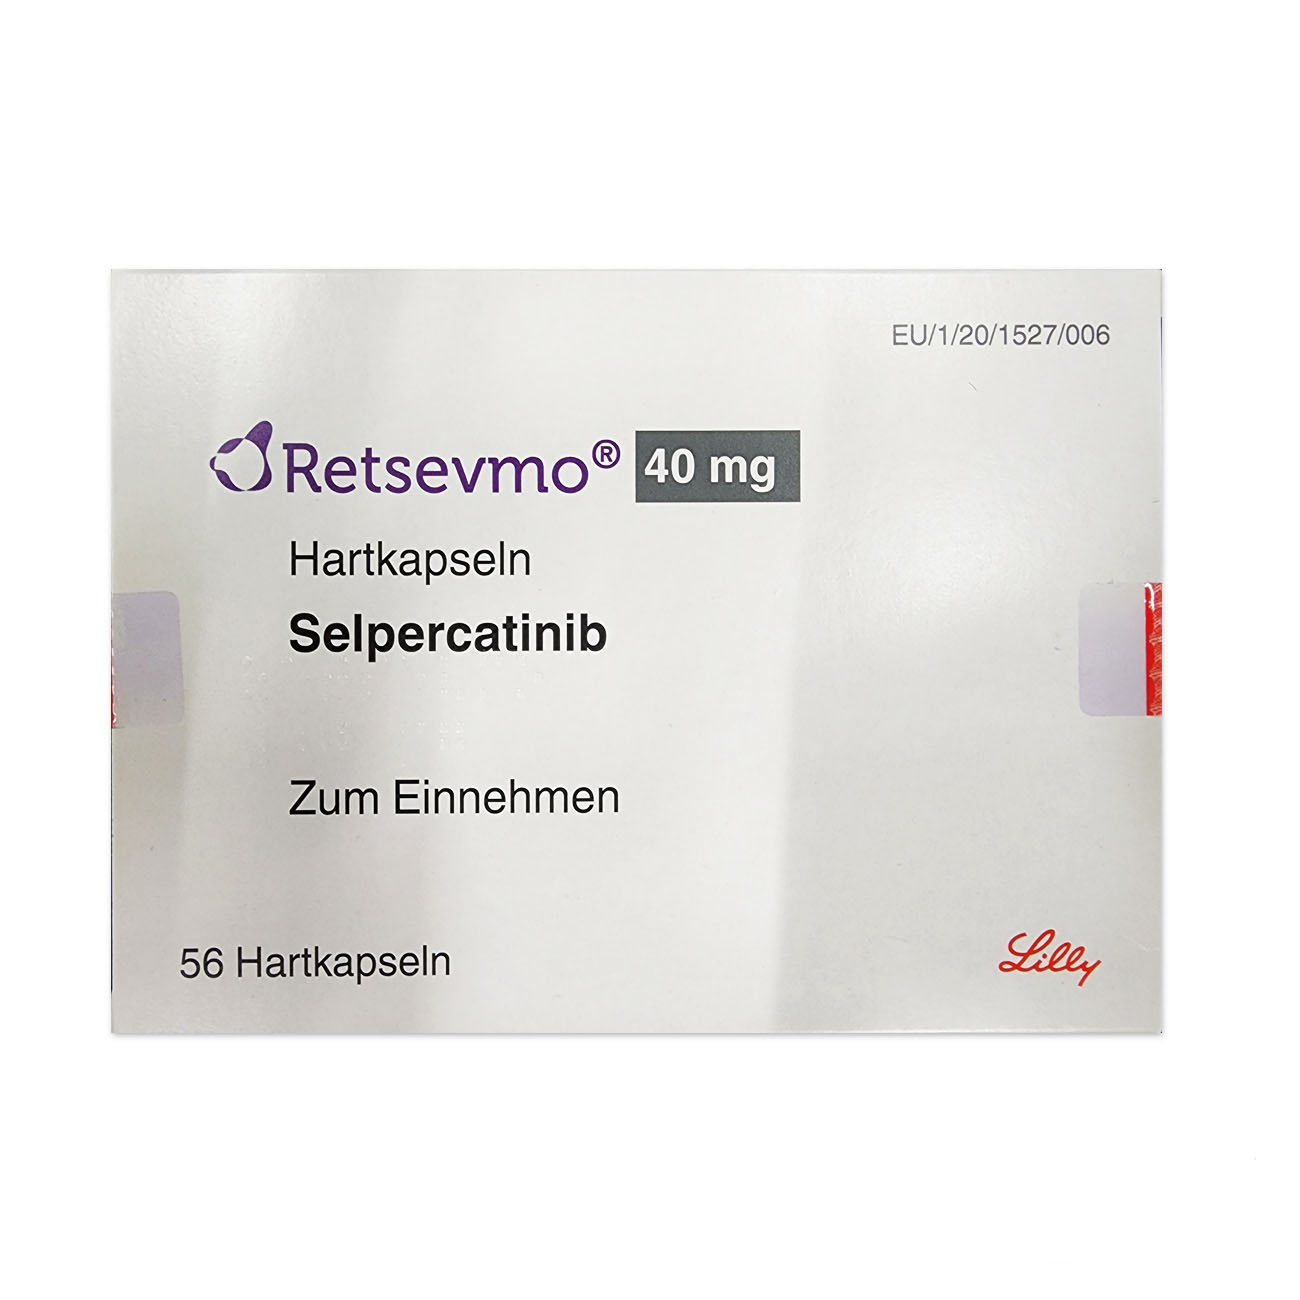 塞普替尼(Selpercatinib)睿妥的耐药及药物相互作用